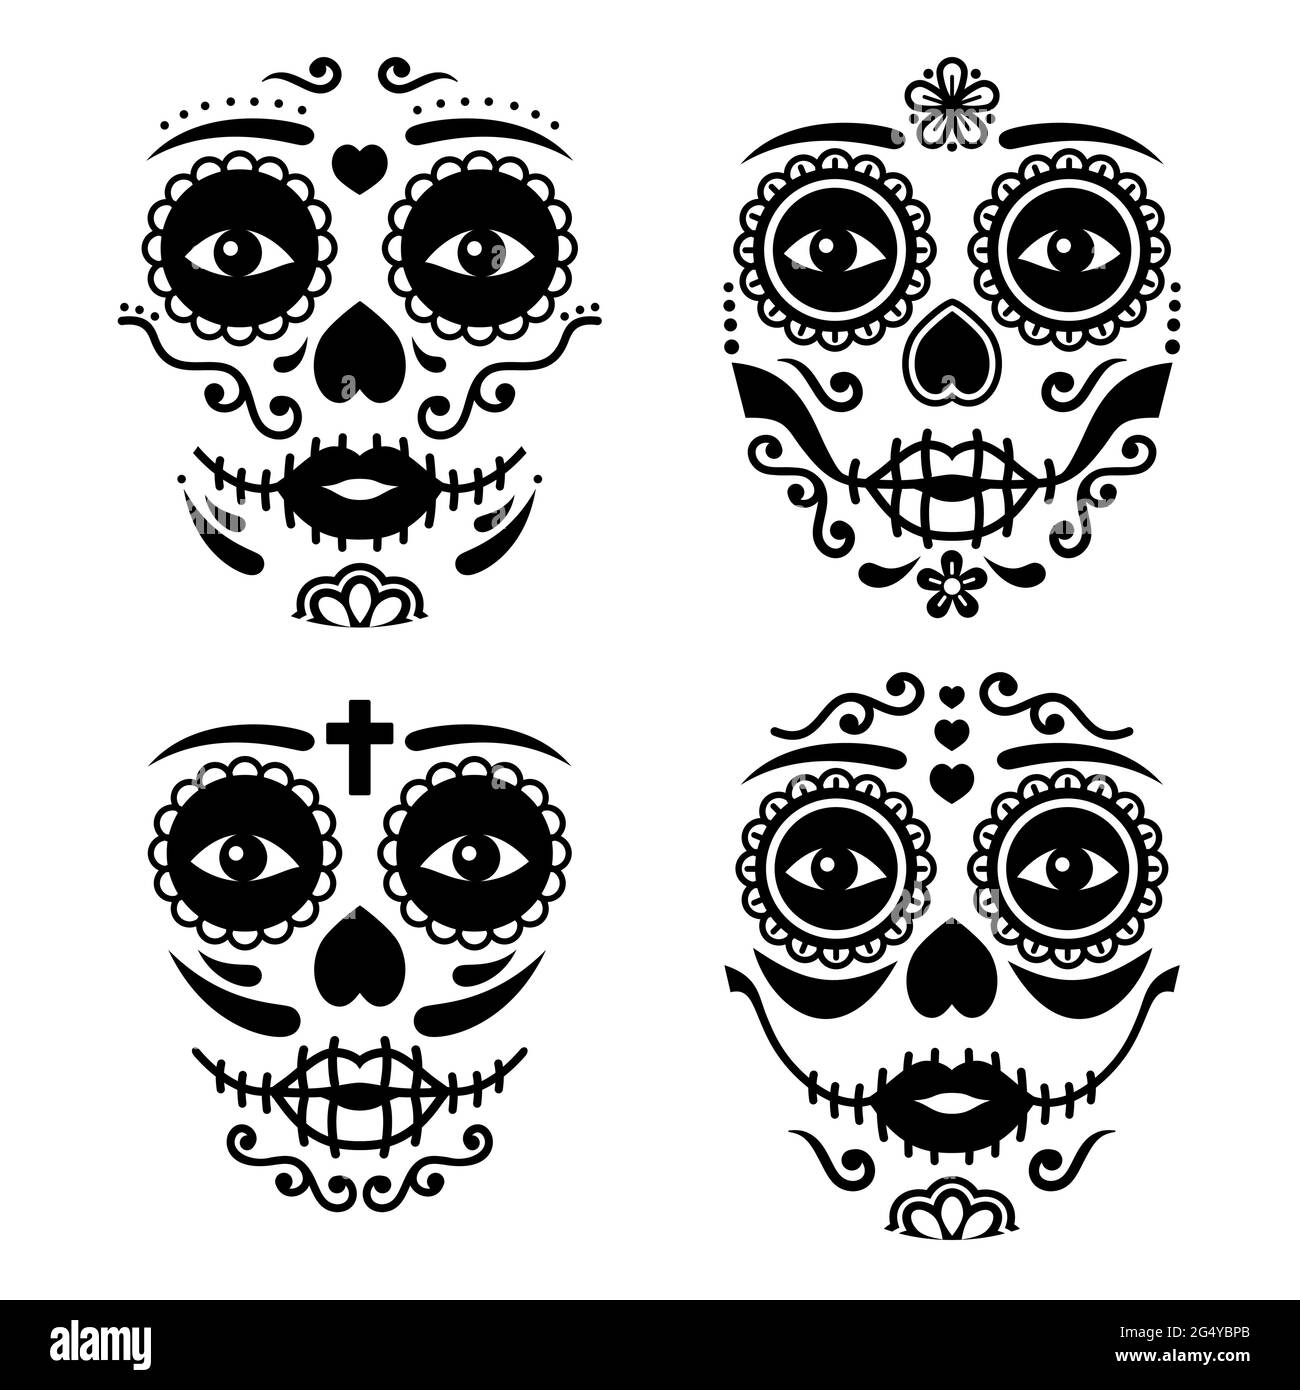 Mexikanisches La Catrina Gesichtsvektordesign, Dia de los Muertos oder Day of the Dead weiblicher Totenschädel in Schwarz und Weiß Stock Vektor